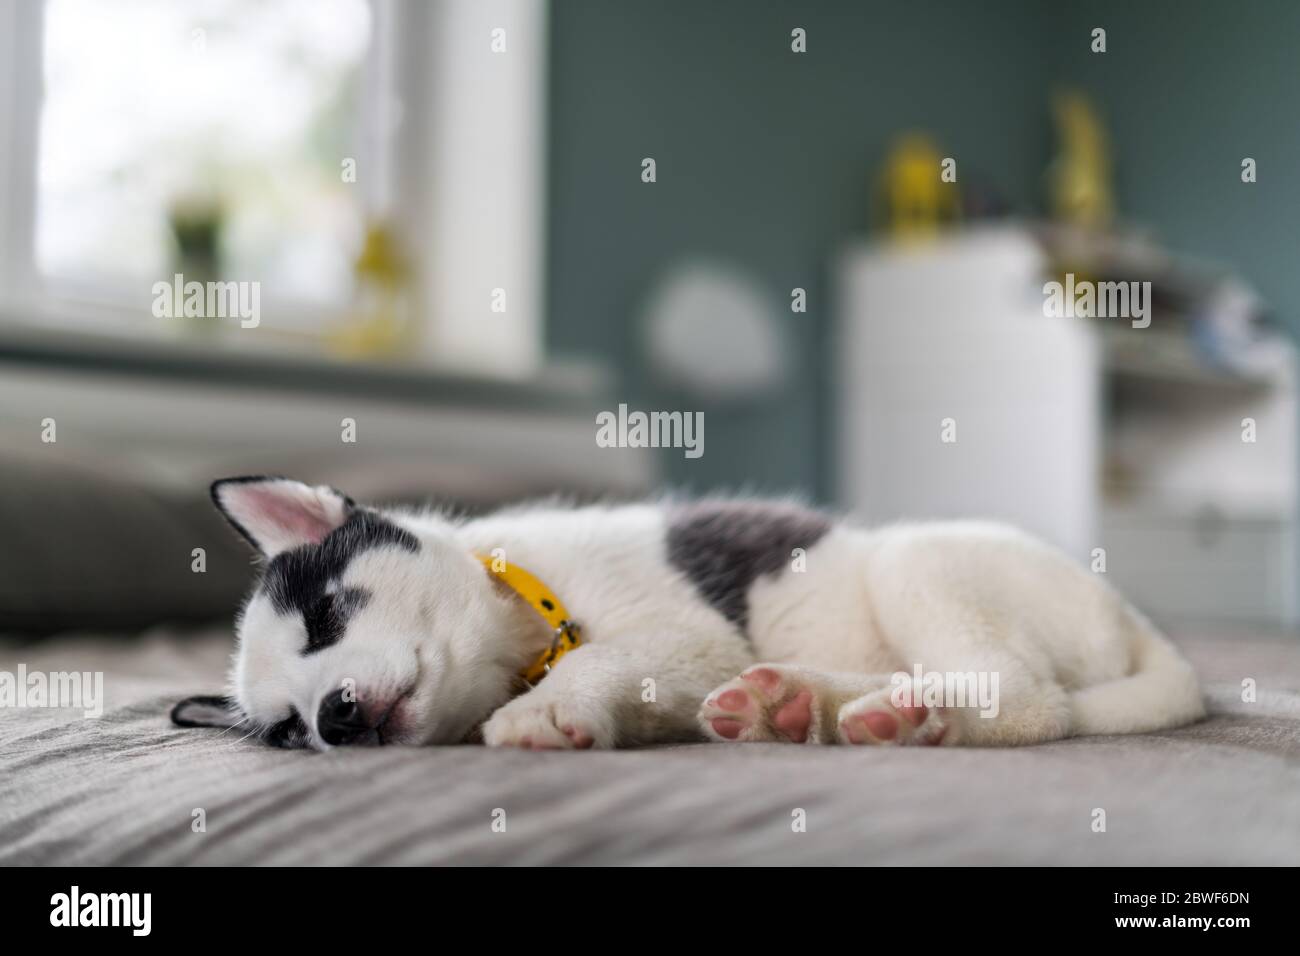 Un piccolo cucciolo di cane bianco razza Husky siberiano con gli occhi blu bella dormire su tappeto grigio. Fotografia di cani e animali domestici Foto Stock